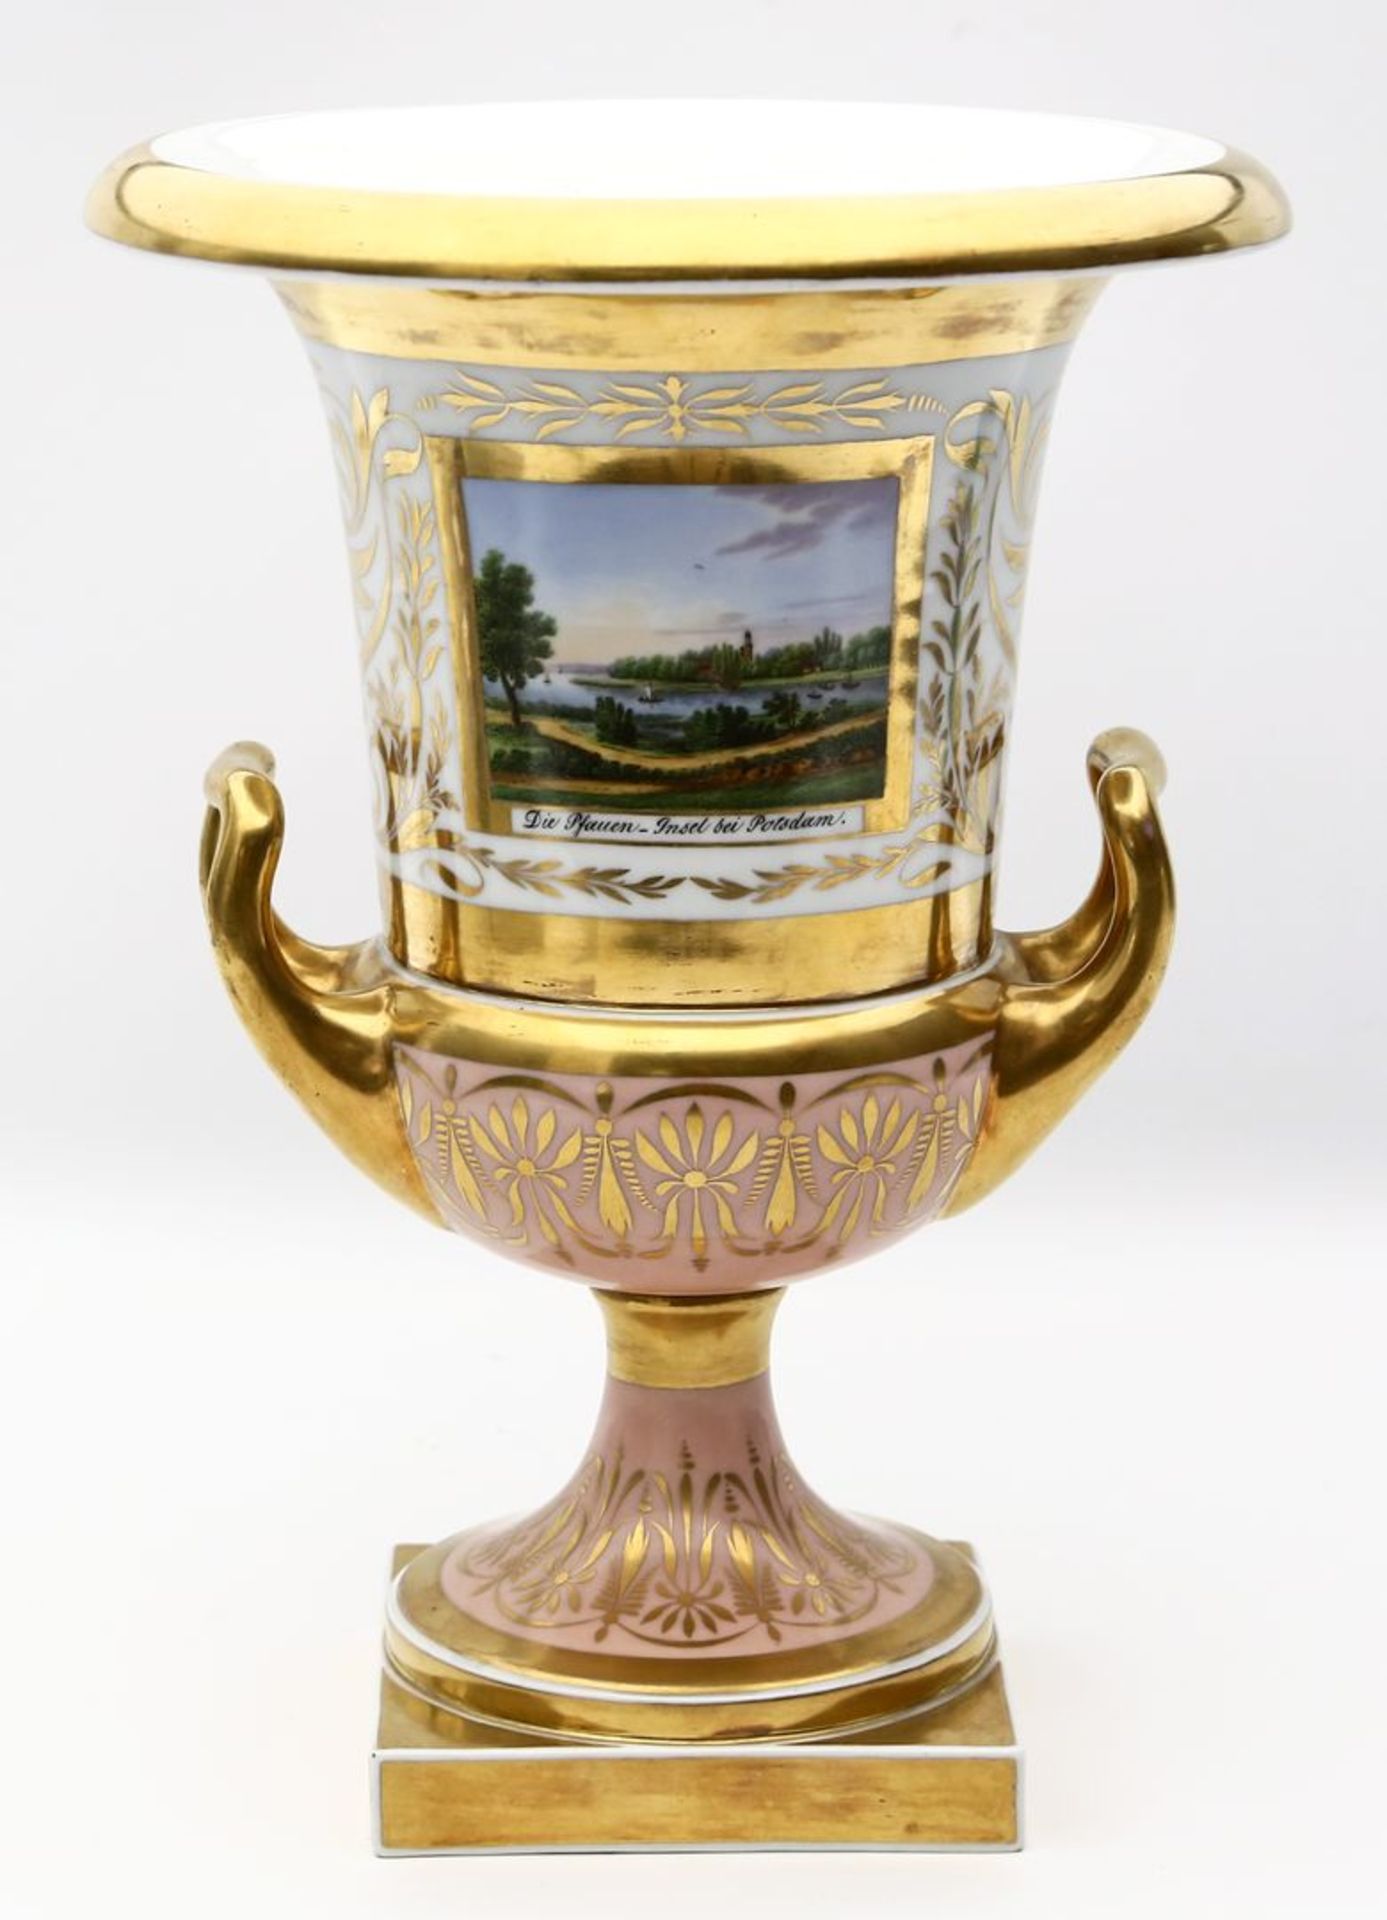 Redensche Vase mit Potsdam-Ansichten, KPM Berlin. - Image 2 of 3